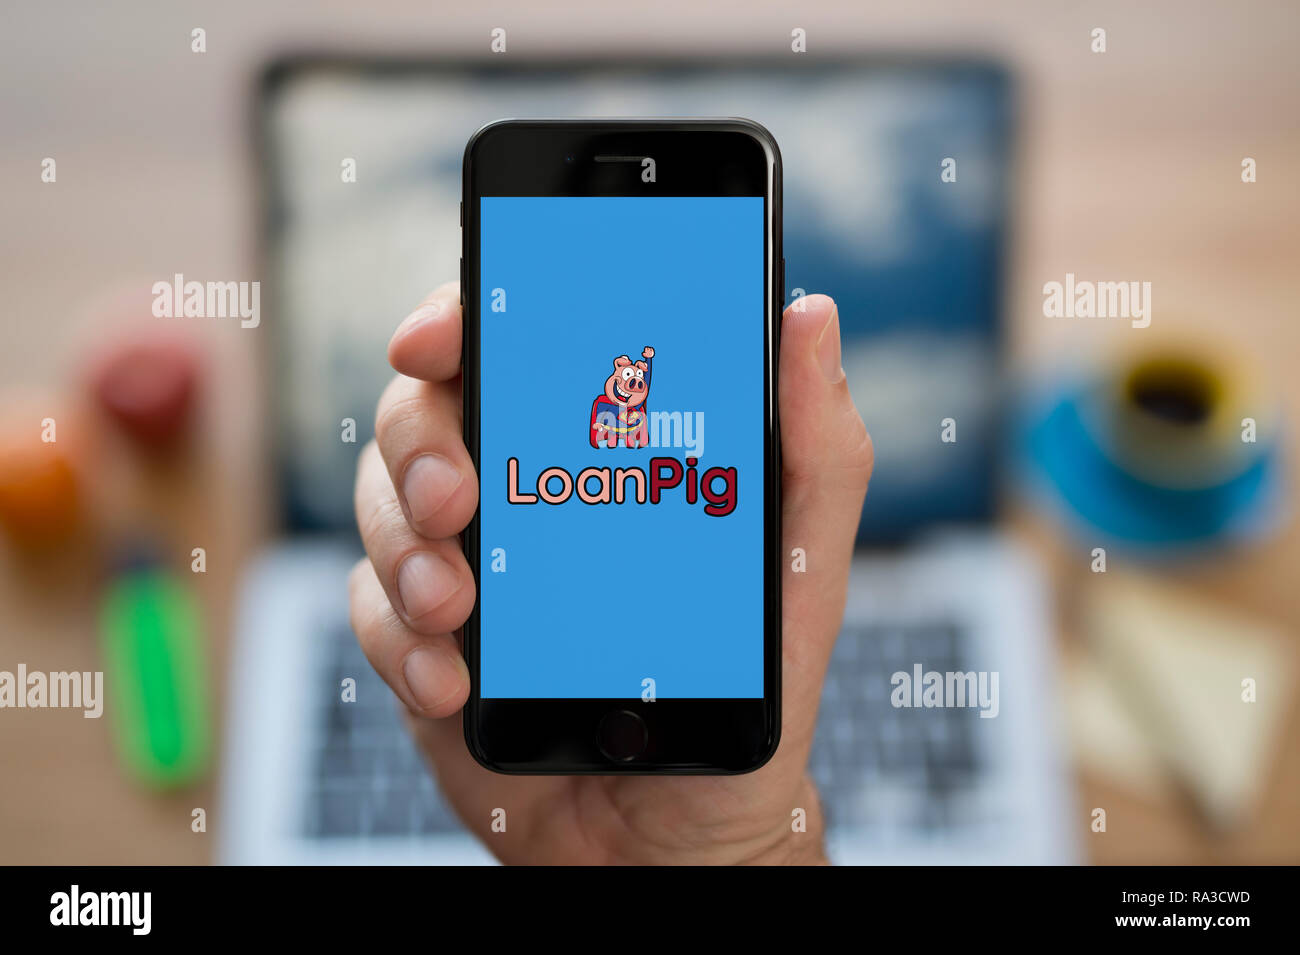 Un uomo guarda al suo iPhone che visualizza il logo LoanPig (solo uso editoriale). Foto Stock